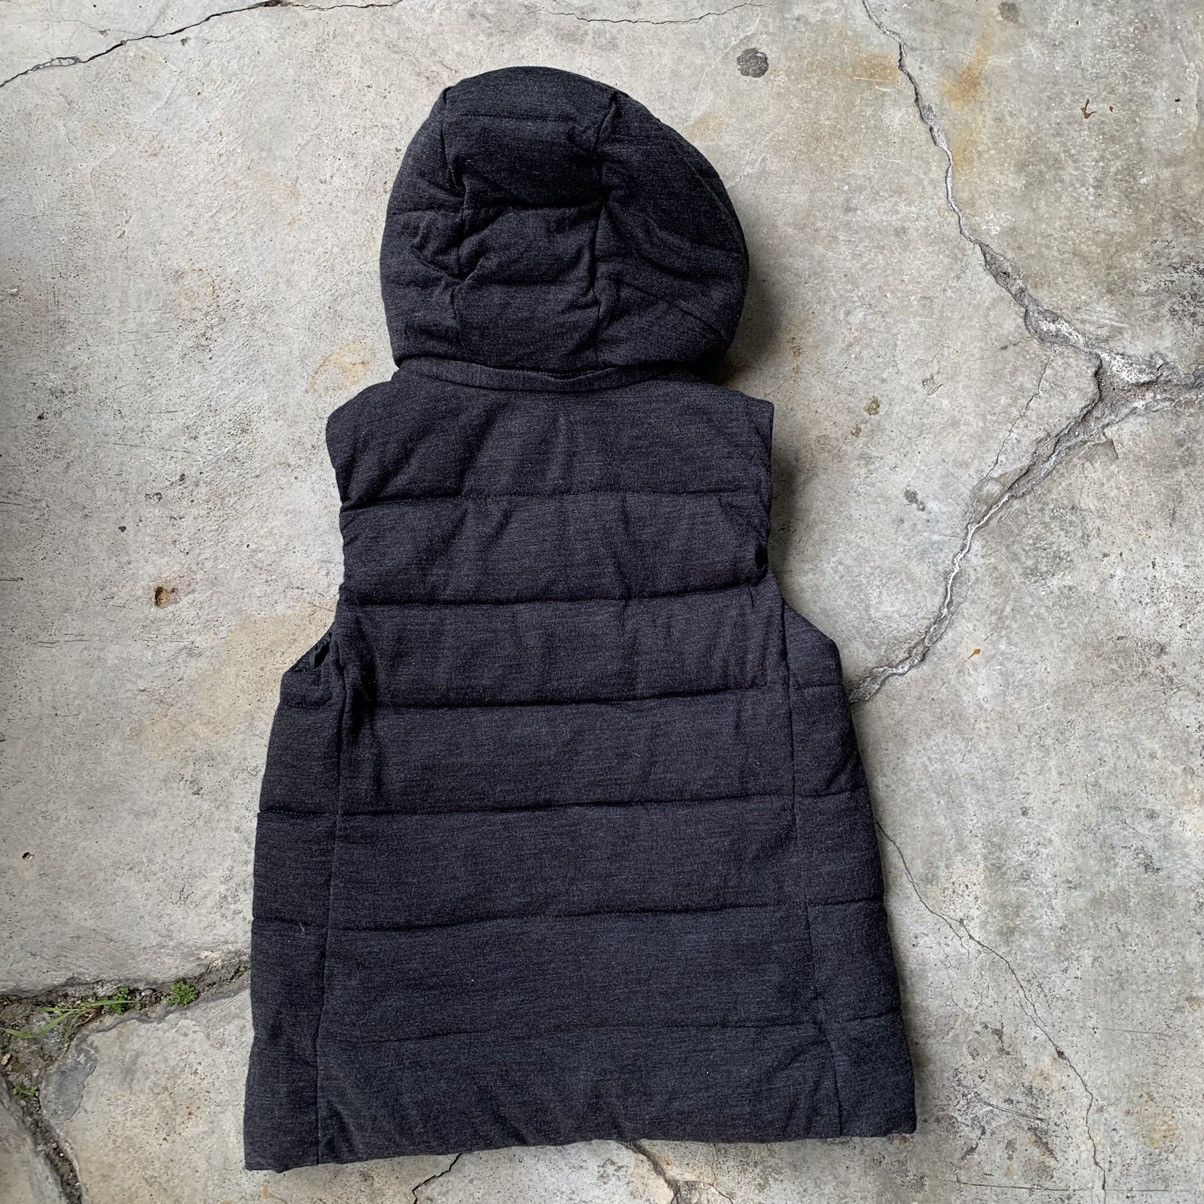 Gap Gap black hoodie vest Size US XS / EU 42 / 0 - 10 Thumbnail